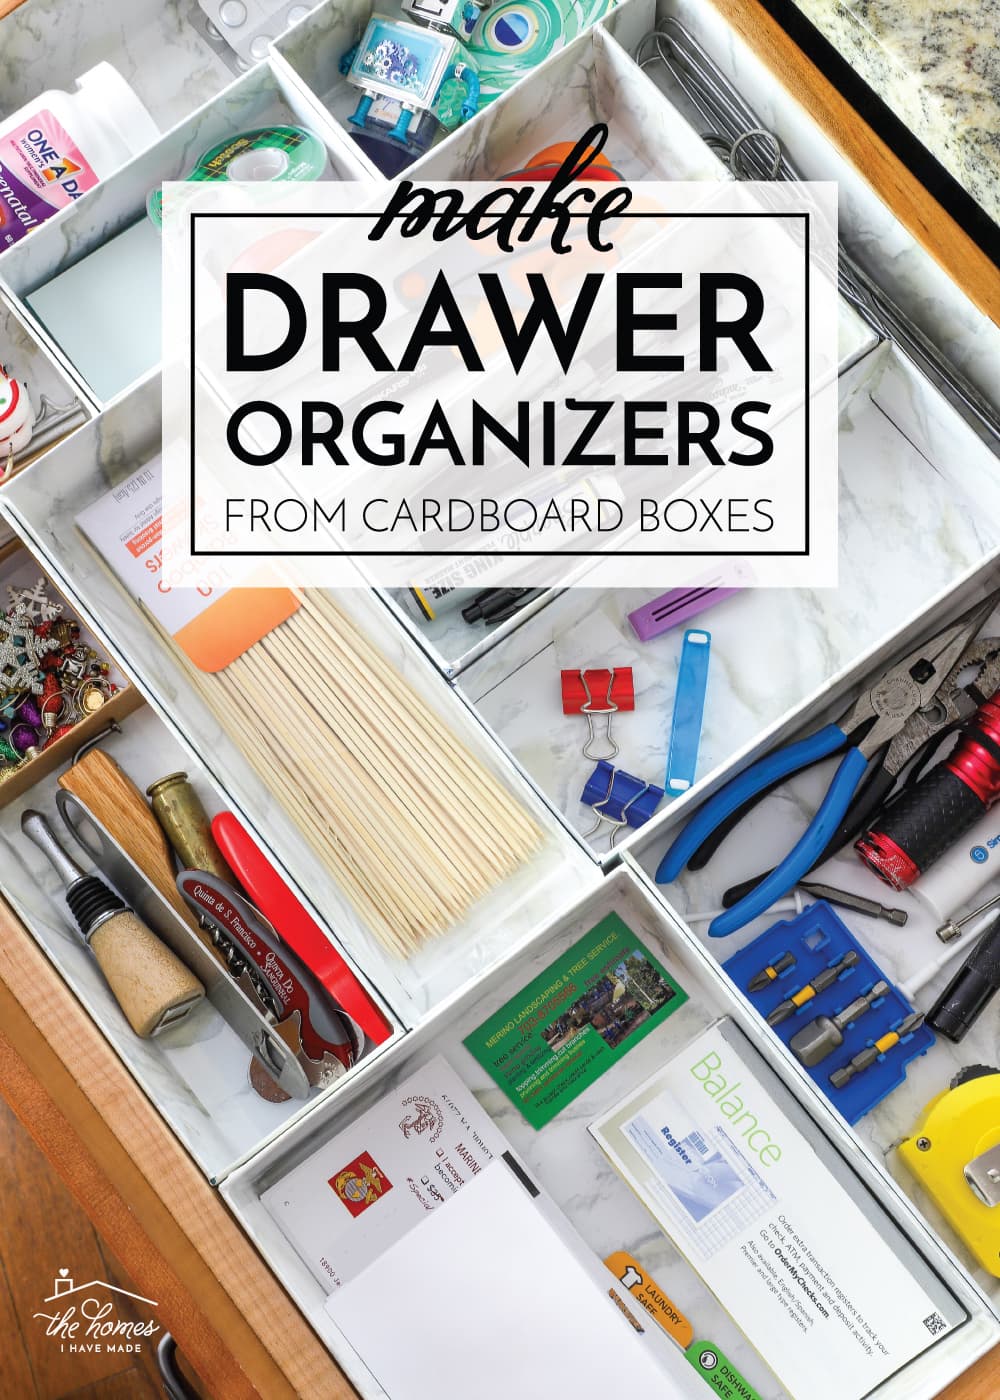 Organizing the Junk Drawer - Balancing Home